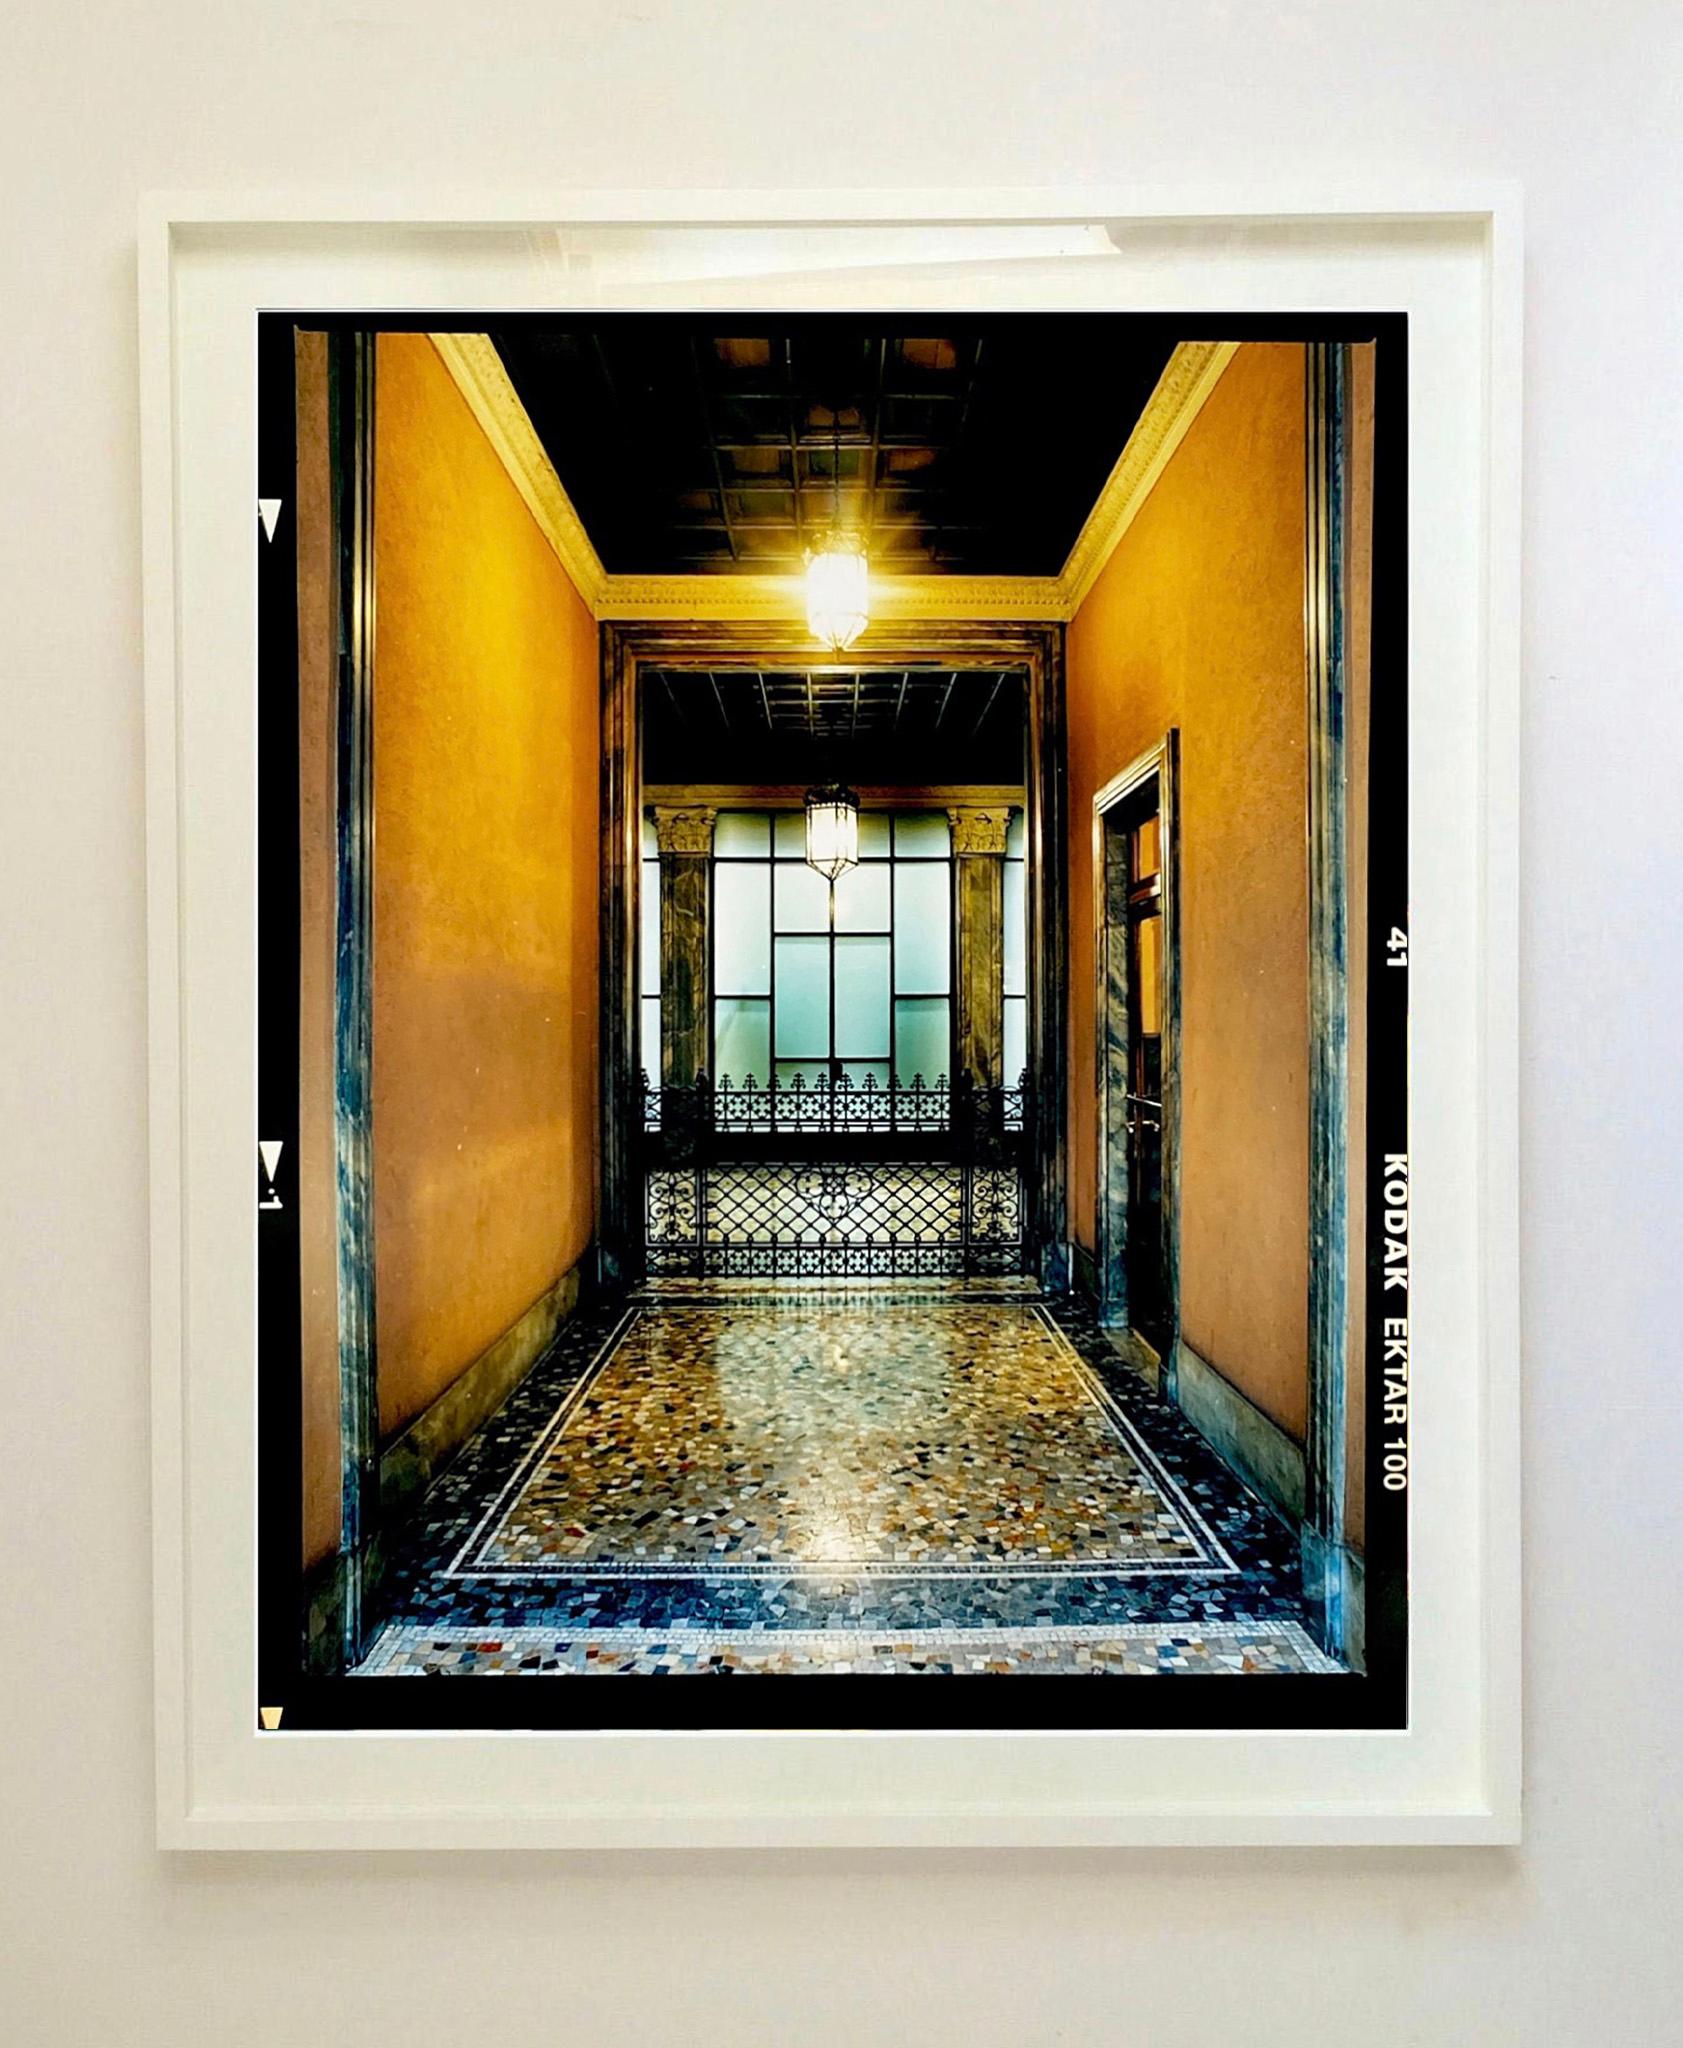 Foyer III, Mailand – Architekturfotografie in Farbfotografie (Zeitgenössisch), Print, von Richard Heeps